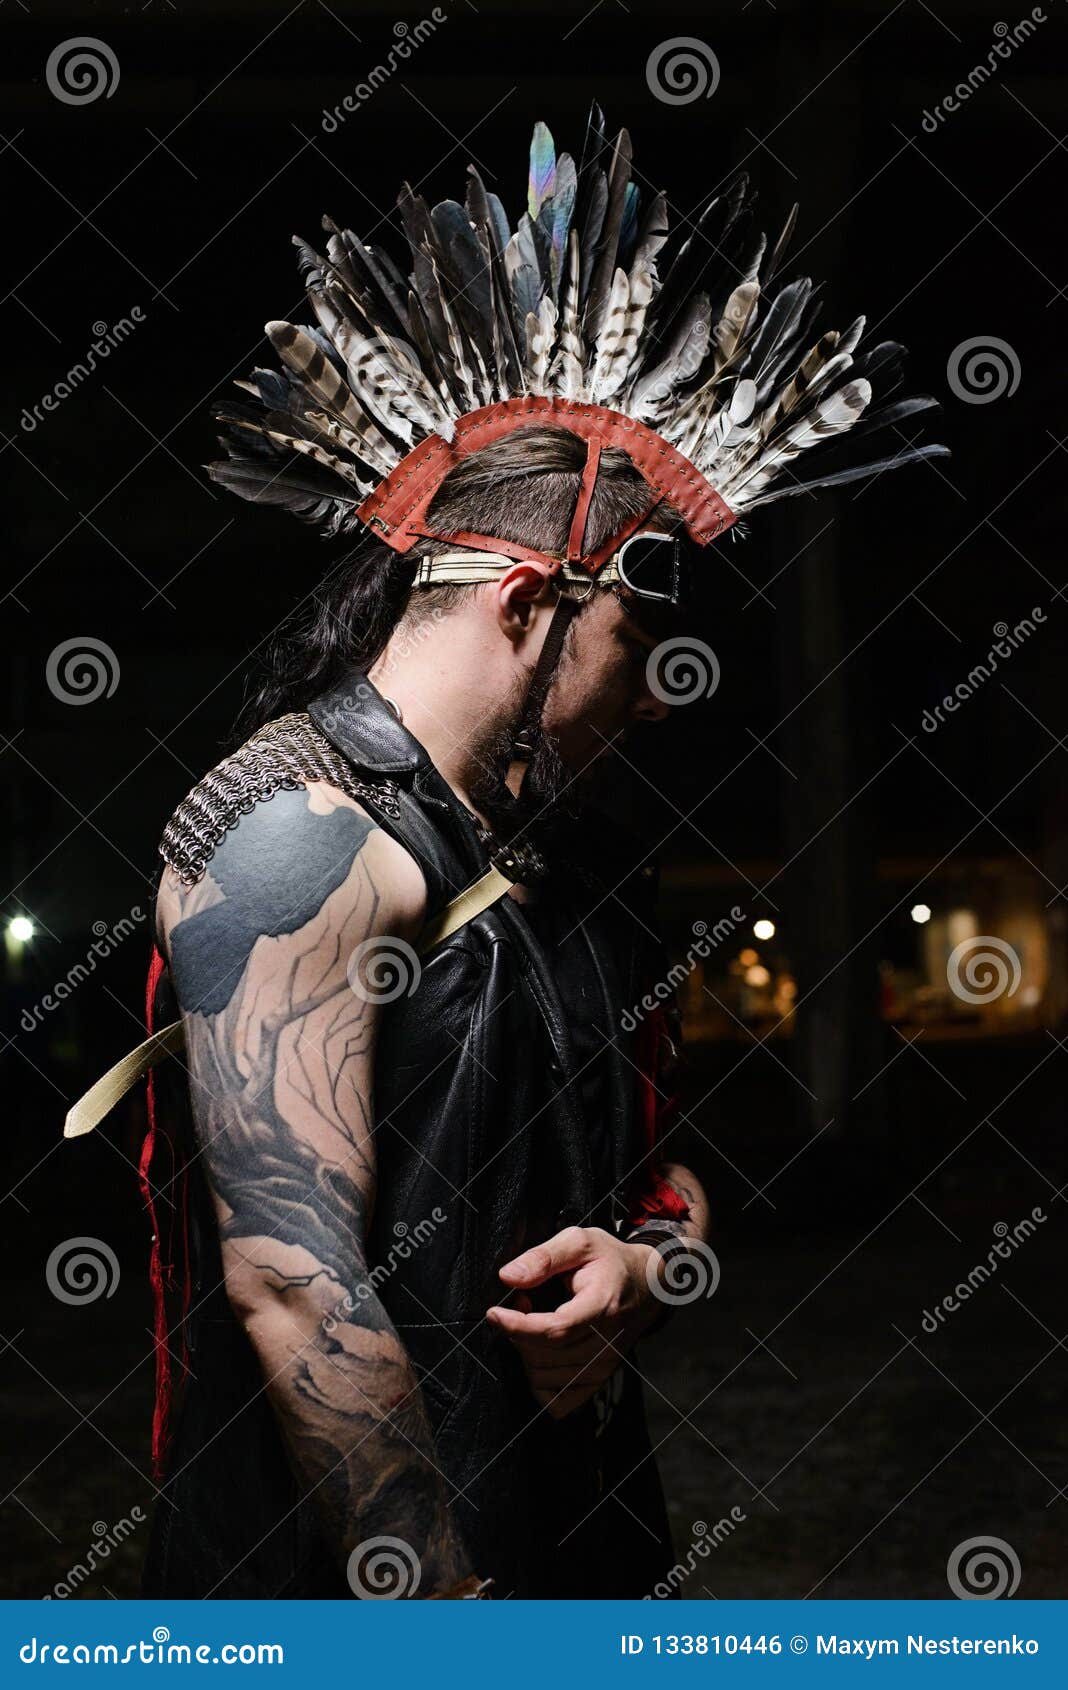 Un Hombre Vestido Con Un Disfraz Indio Con Plumas En La Cabeza, Cerca Foto  de archivo editorial - Imagen de indios, cierre: 162071683